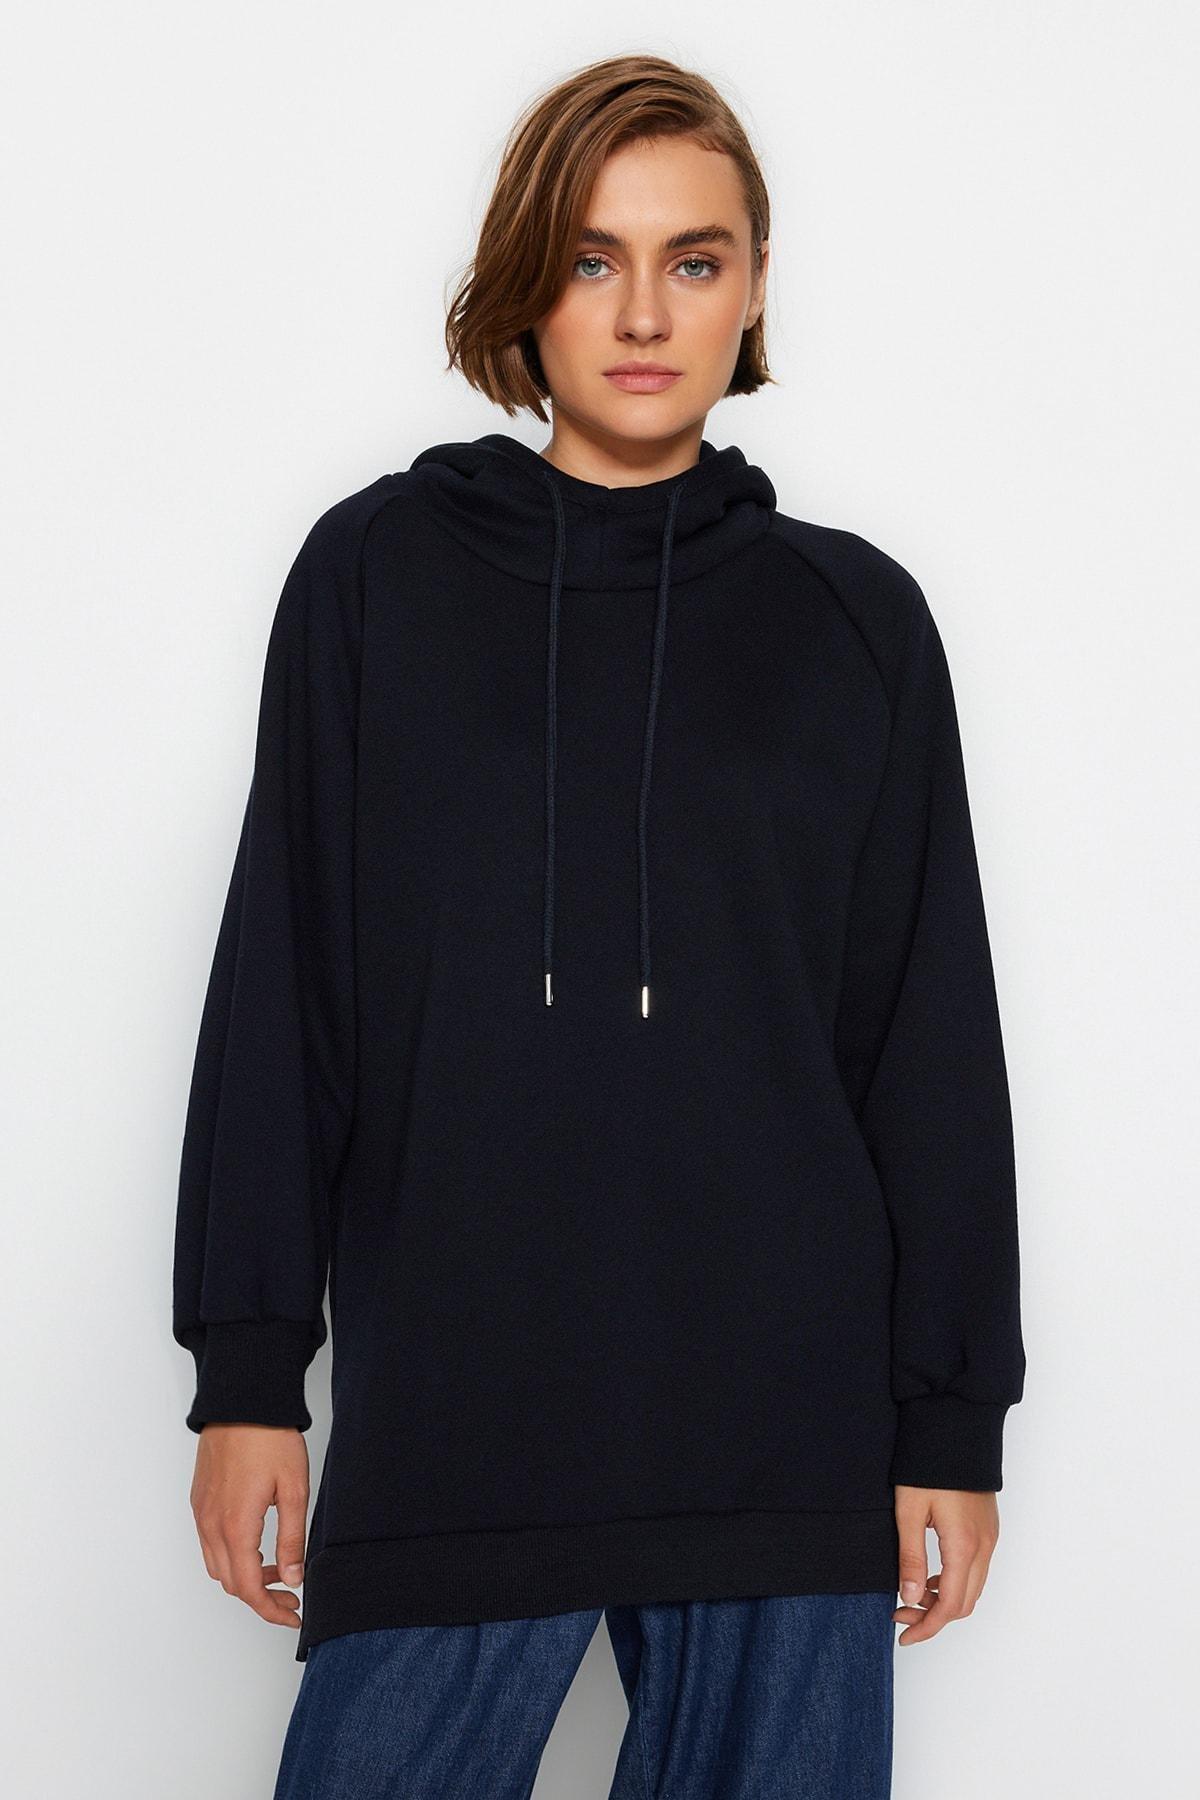 Trendyol - Navy Plain Hooded Sweatshirt